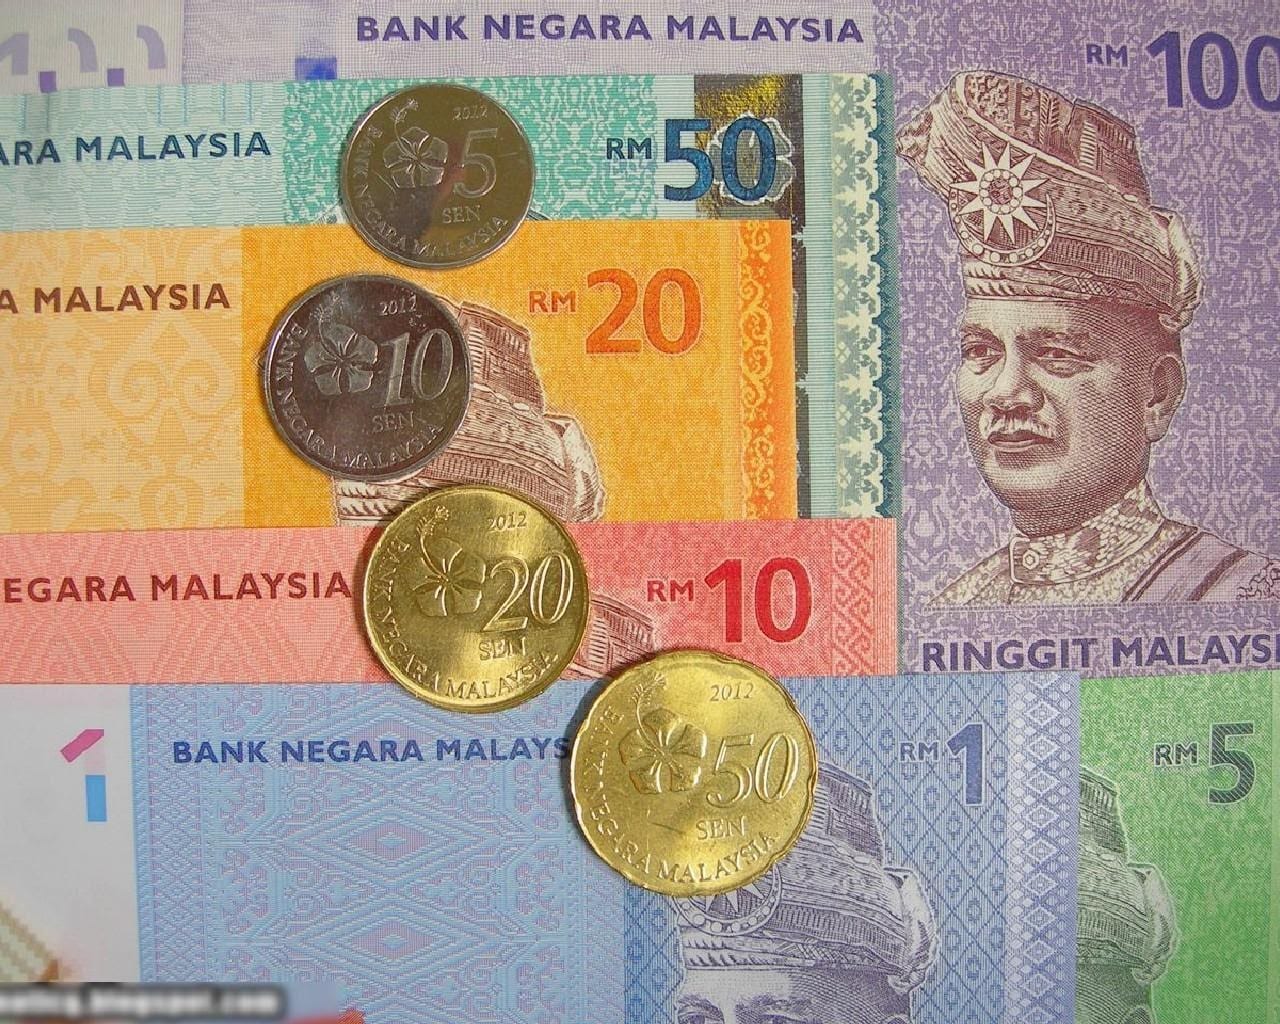 malaysia dùng tiền gì, tiền malaysia, tiền malaysia 1, tiền malaysia 50 sen, tiền xu malaysia, tiền malaysia 50, tiền xu malaysia 20 sen, tiền malaysia 1 đồng, tiền malaysia gọi là gì, malaysia xài tiền gì, đồng tiền malaysia gọi là gì, malaysia sử dụng tiền gì, tiền malaysia 1 ringgit, tiền malaysia đọc là gì, tiền malaysia có những mệnh giá nào, tiền malaysia 1 rm, tiền nước malaysia, tiền xu malaysia 50 sen, tiền malaysia 5 ringgit, tiền malaysia 10 sen, 10 sen malaysia bằng bao nhiêu tiền việt, 20 sen malaysia, 20 sen malaysia bằng bao nhiêu tiền việt nam, 50 sen malaysia bằng bao nhiêu tiền việt nam, 50 sen malaysia, 10 sen malaysia bằng bao nhiêu tiền việt nam, tiền malaysia 5 sen, 10 sen malaysia, hình ảnh tiền malaysia, các mệnh giá tiền malaysia, 20 sen malaysia to vnd, cách nhận biết tiền malaysia, sen malaysia, đồng tiền malaysia, dong tien malaysia, đồng xu malaysia, tiền malaysia 10 sen giá bao nhiêu, 100 sen malaysia, 50 sen bằng bao nhiêu tiền việt nam